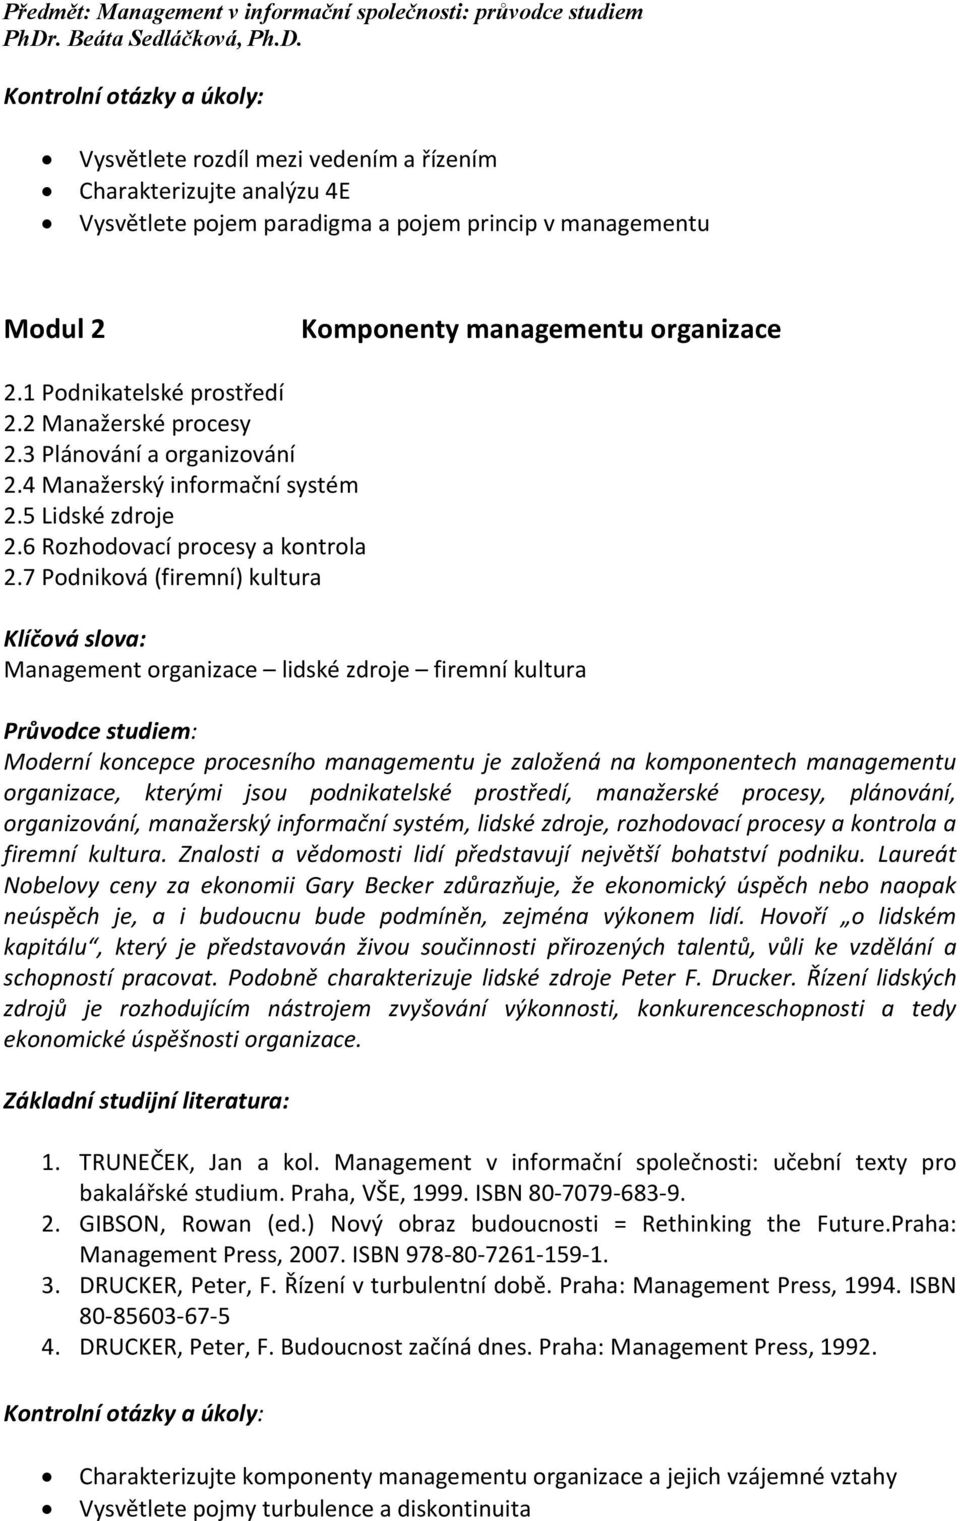 7 Podniková (firemní) kultura Management organizace lidské zdroje firemní kultura Moderní koncepce procesního managementu je založená na komponentech managementu organizace, kterými jsou